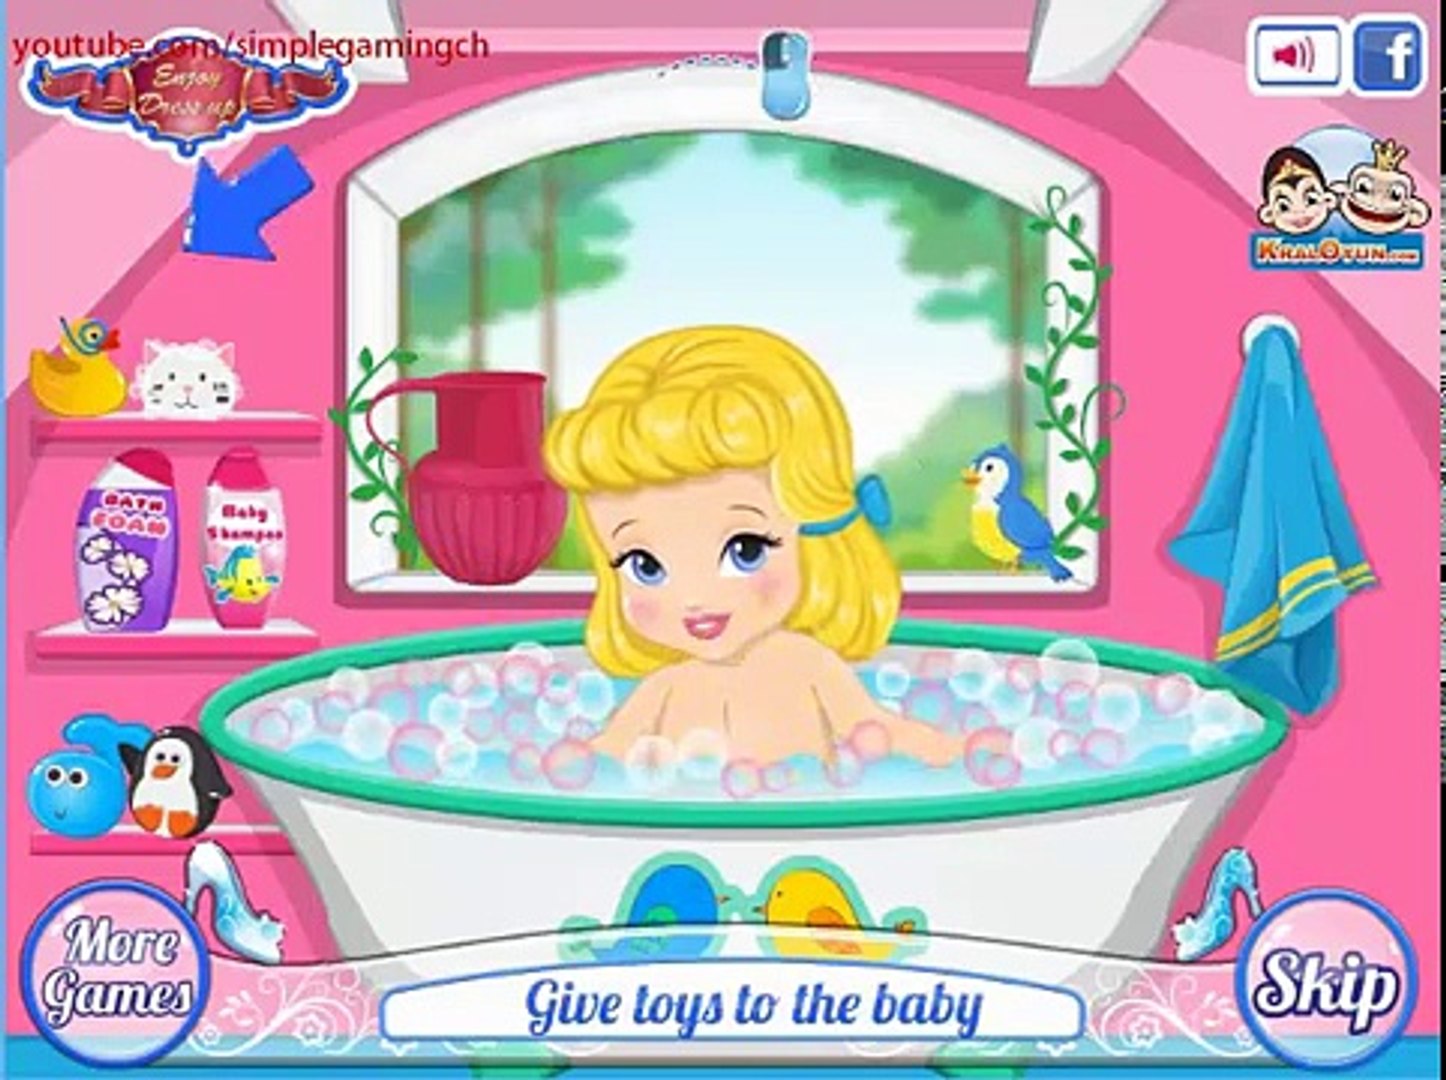 Bebé bola Cenicienta juego Juegos princesa Disney disney disney